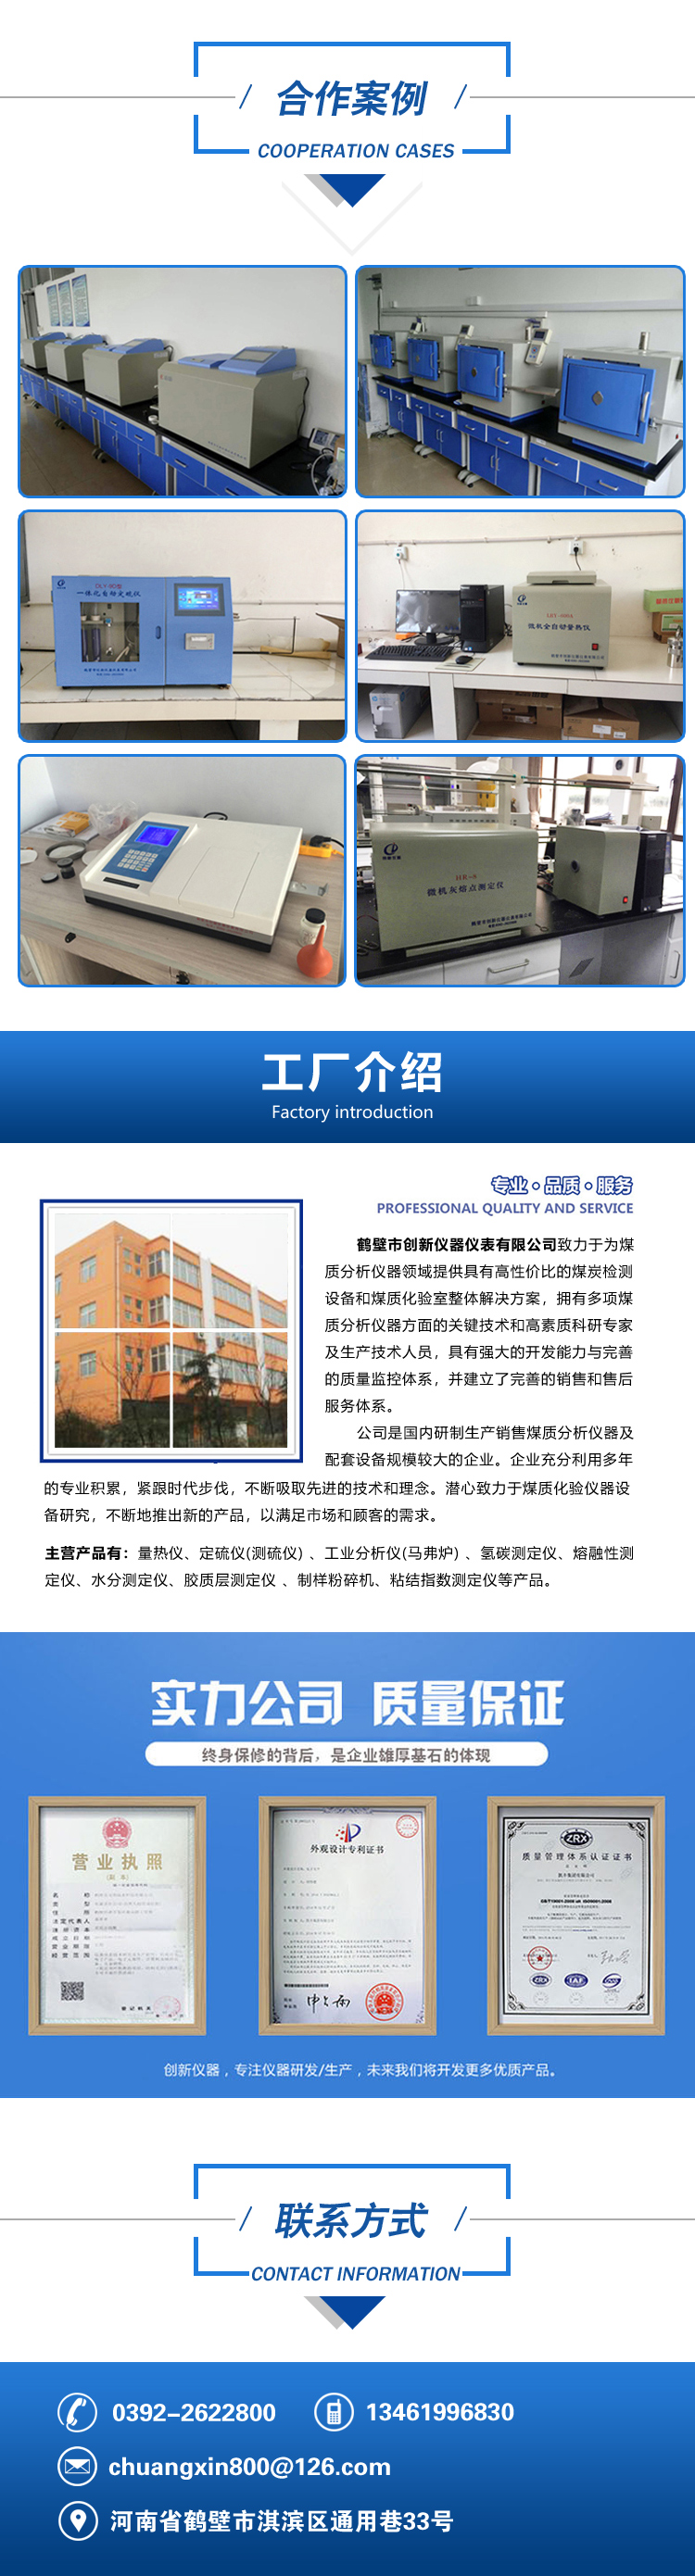 上海上平 FA1004 电子分析天平 高精度电子天平